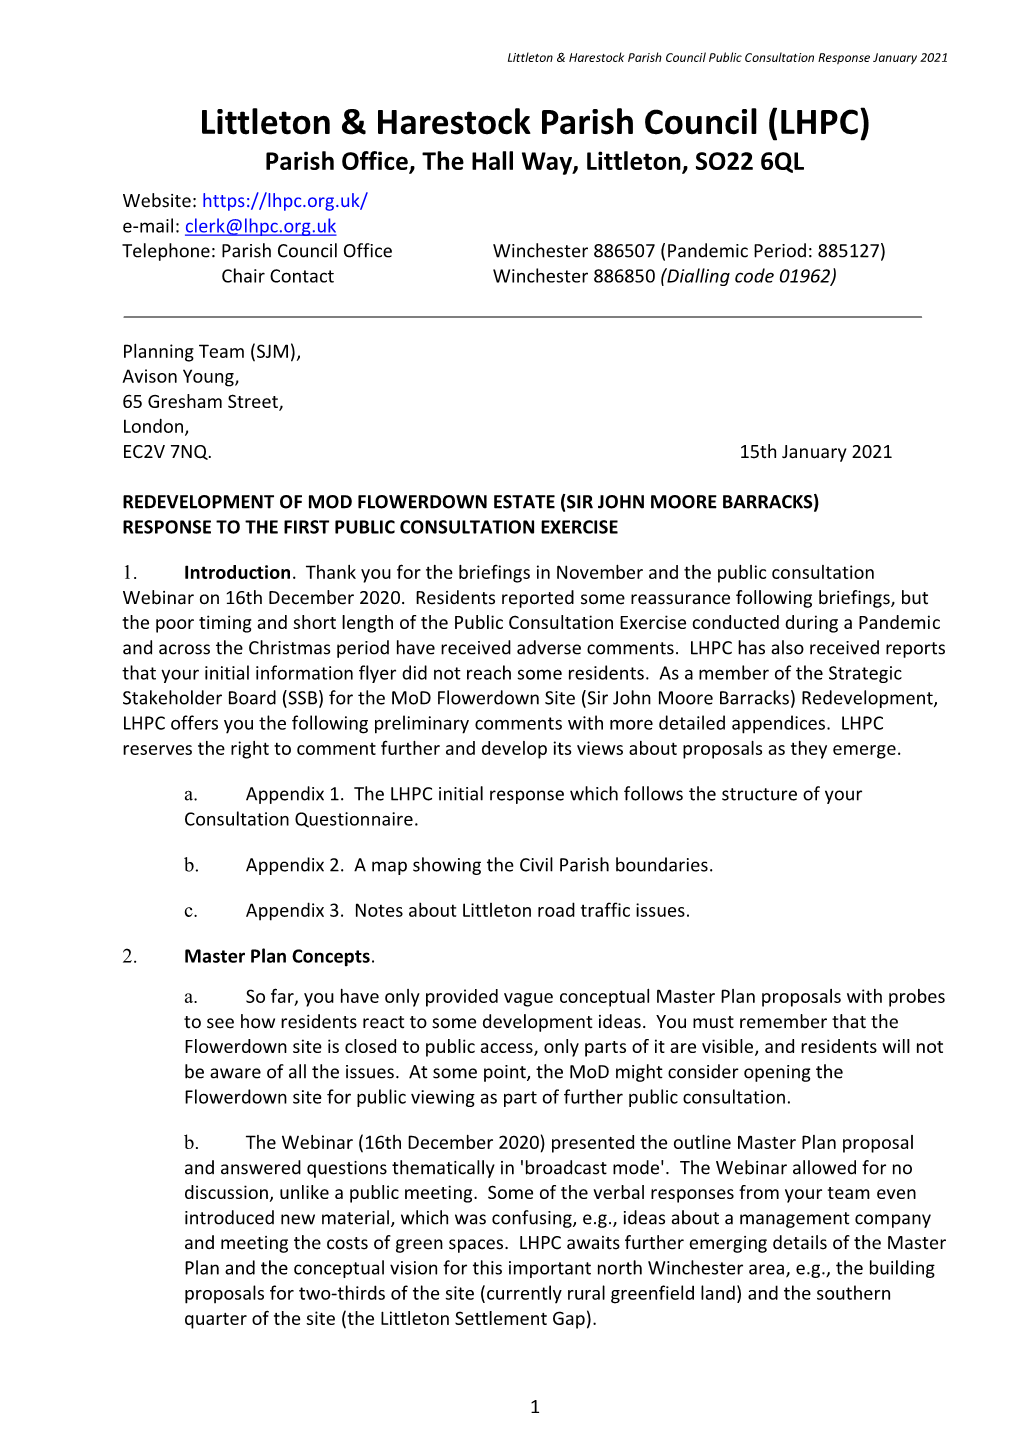 LHPC Flowerdown Public Consultation Response